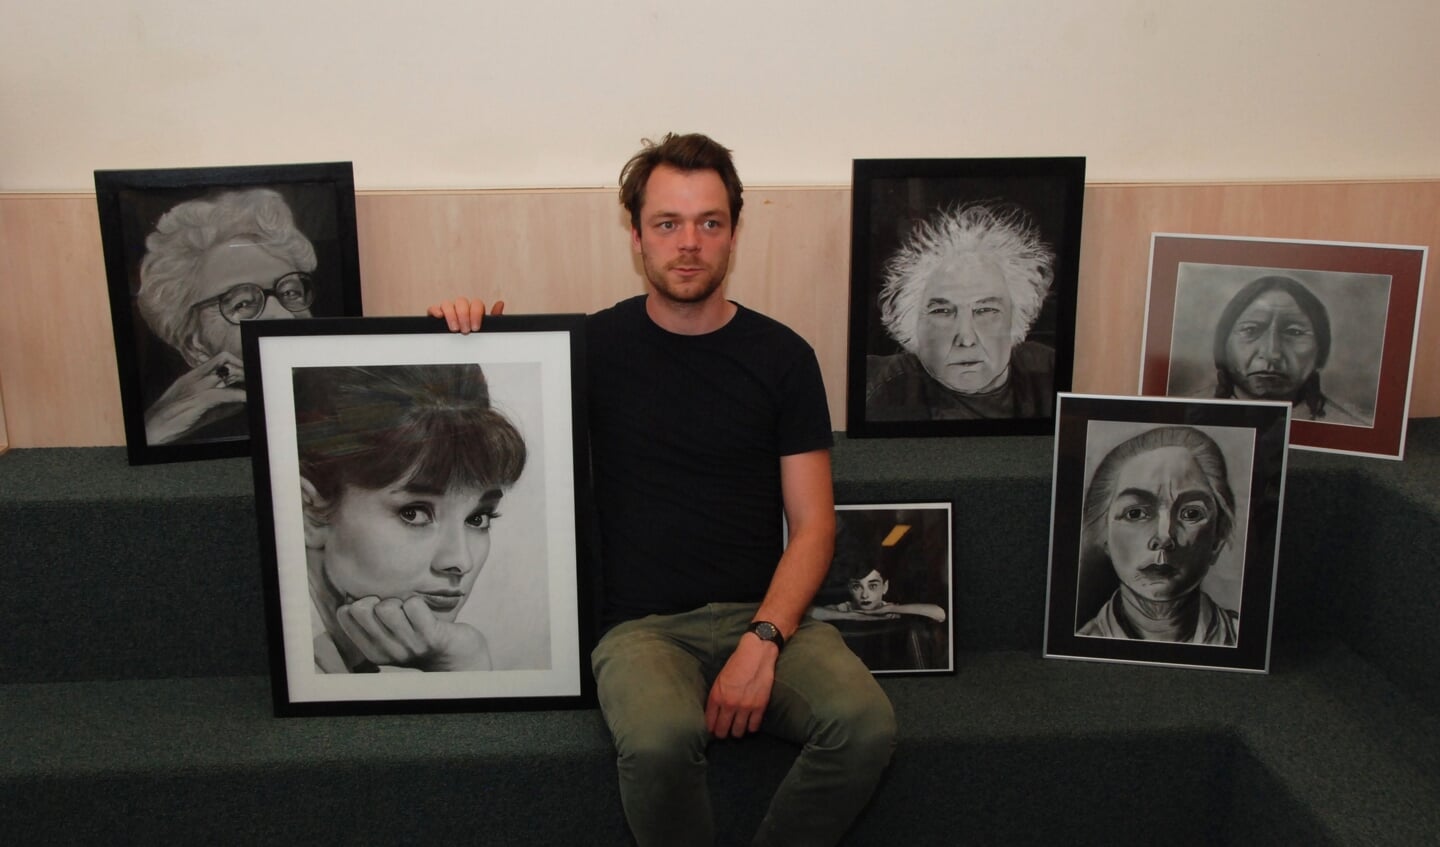 Martijn Versteeg met het portret van Audrey Hepburn en werk van cursisten.